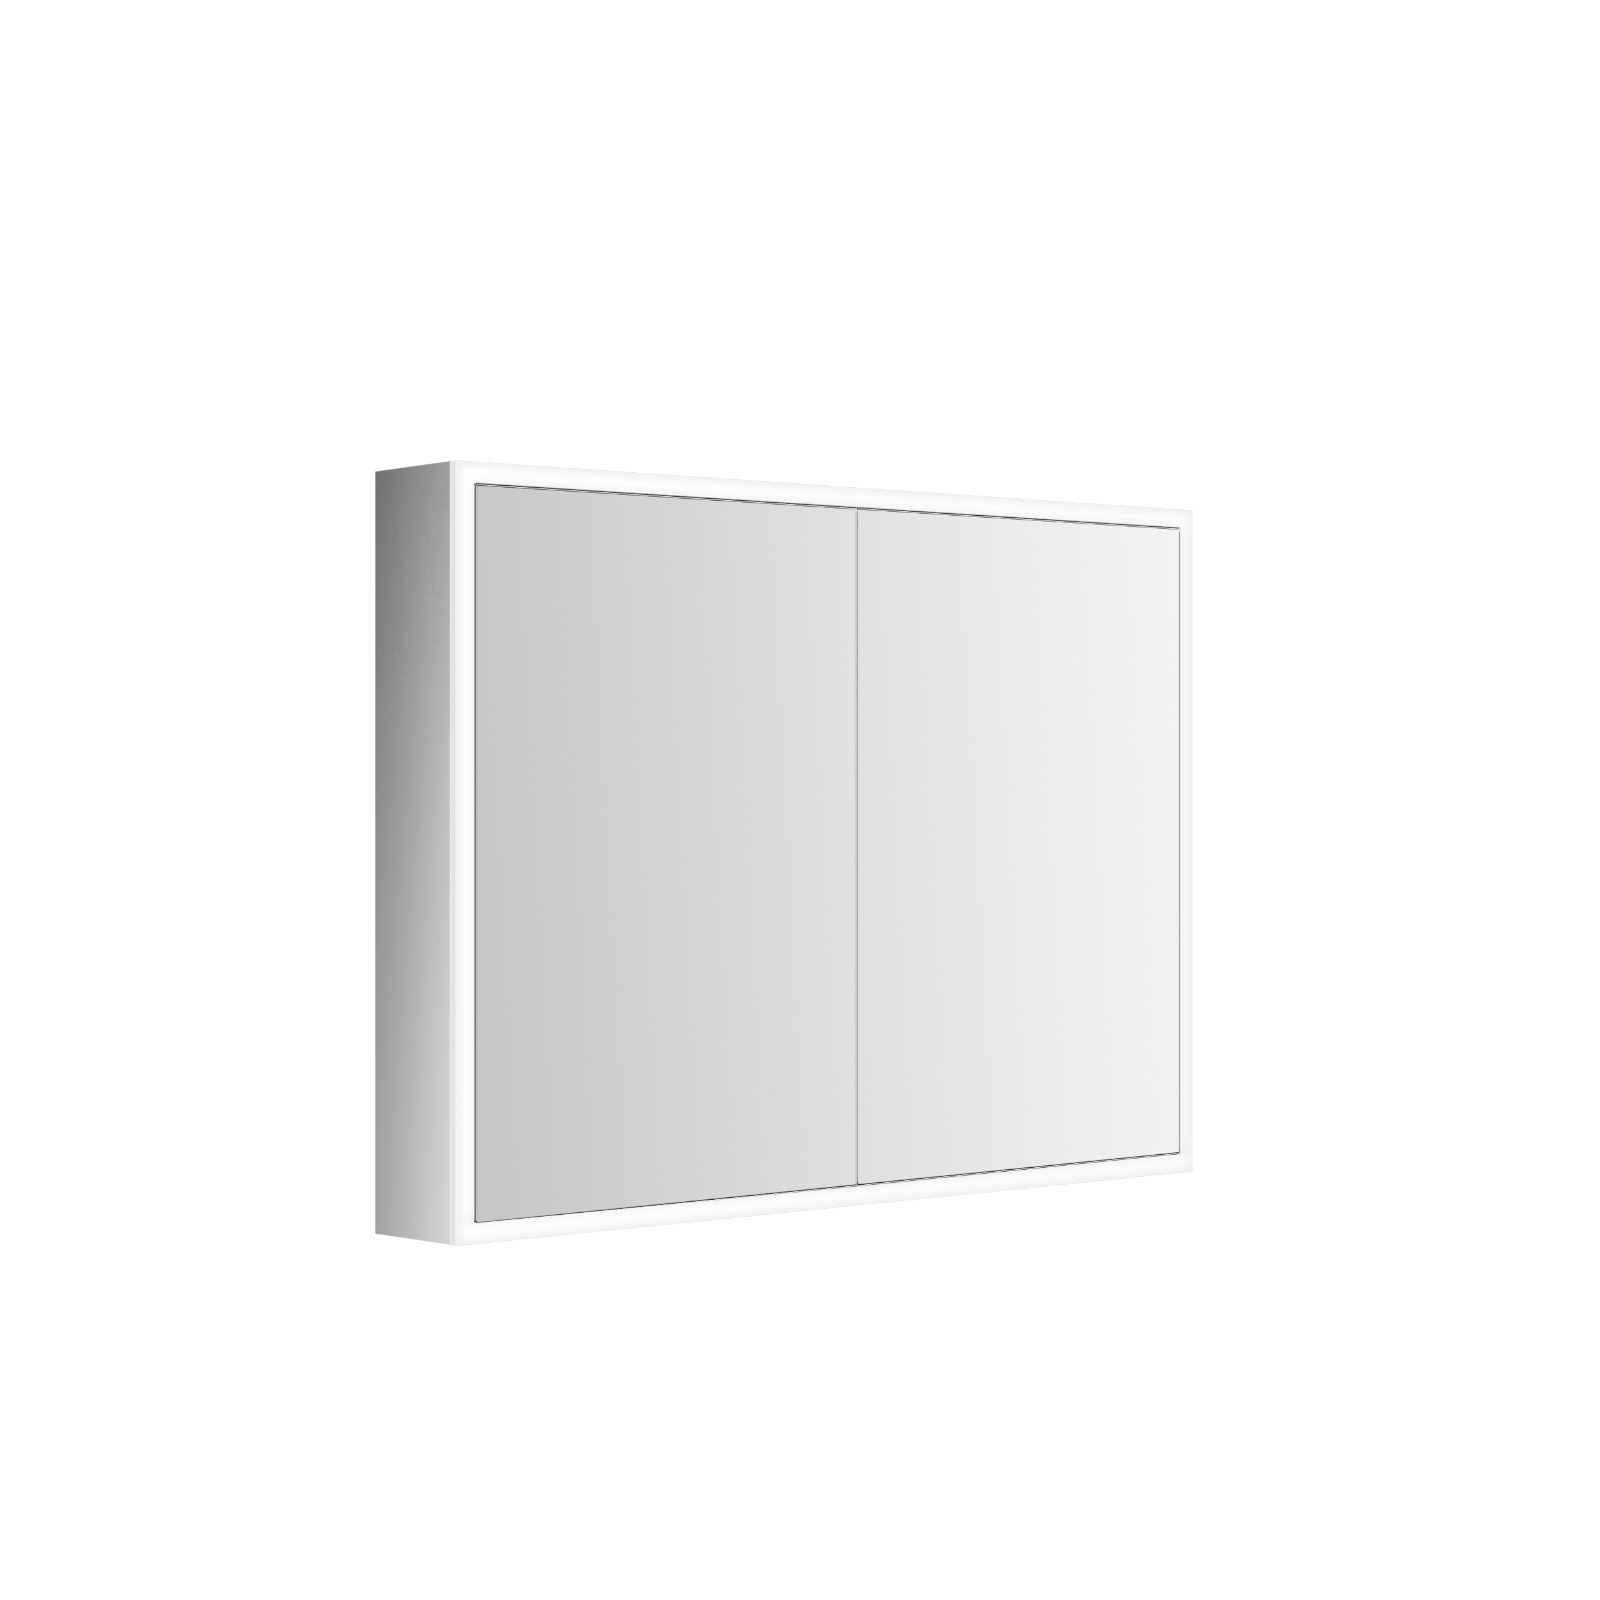 Specchio contenitore 3 ante battenti e lampada led Misure specchi 99x15x70  cm Colore specchi Bianco frassinato